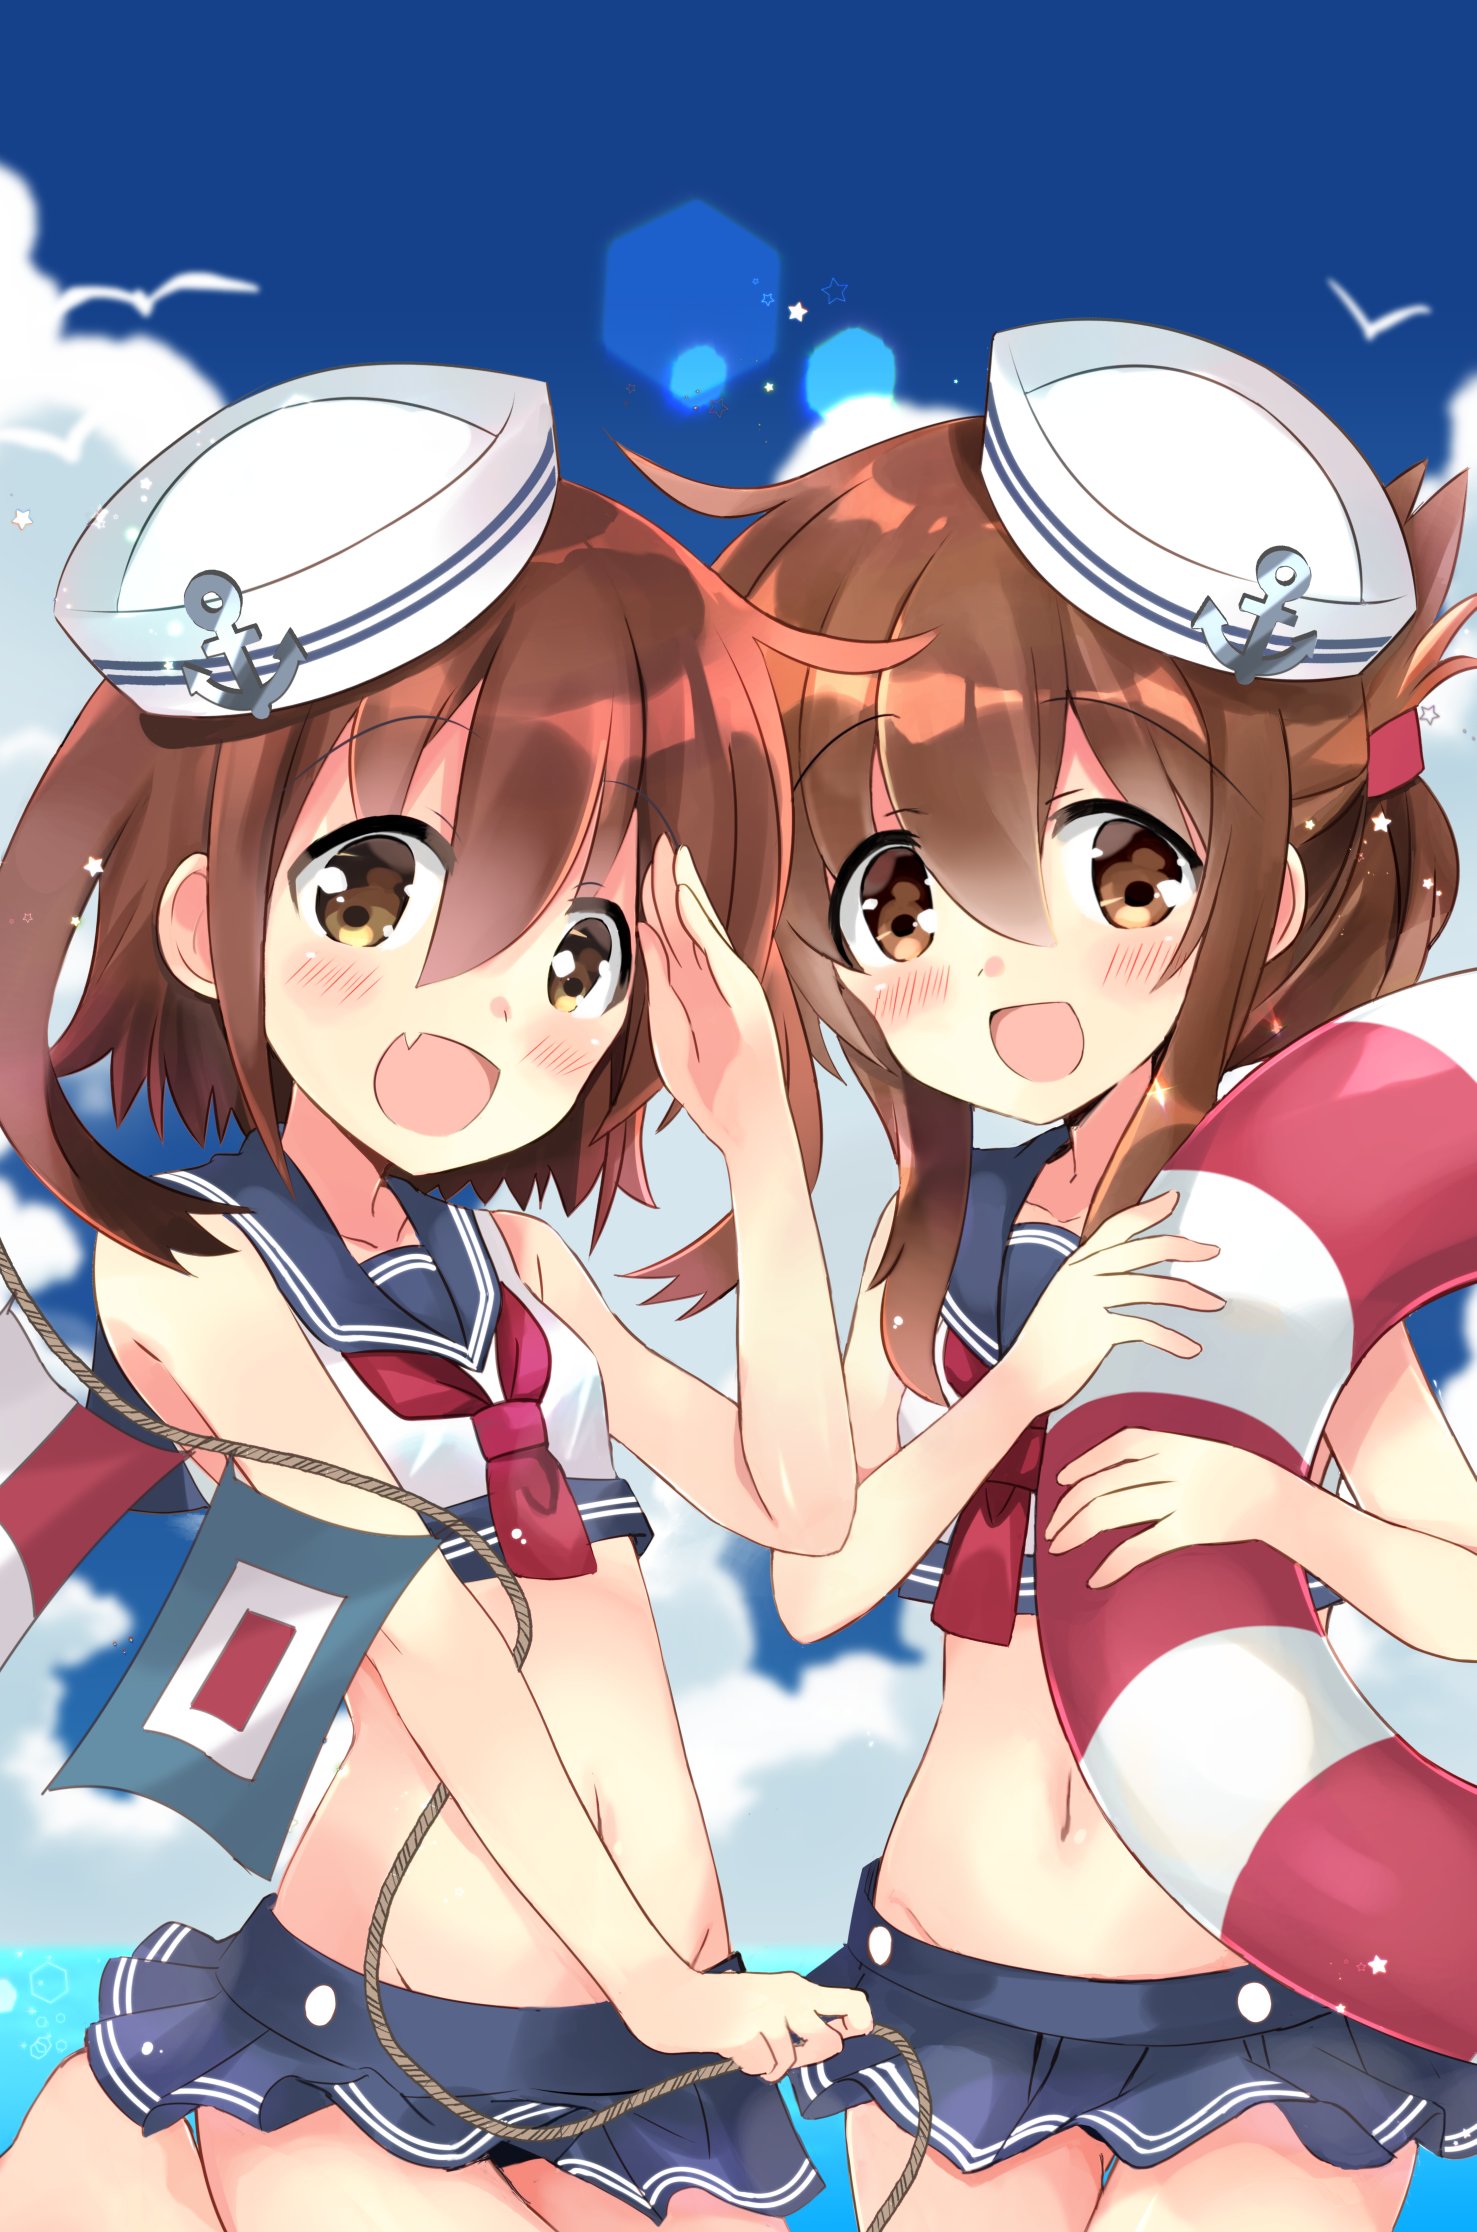 艦隊これくしょんの駆逐艦雷ちゃんと電ちゃん姉妹のロリハーレム姉妹丼してる羨ましい二次エロ画像-49